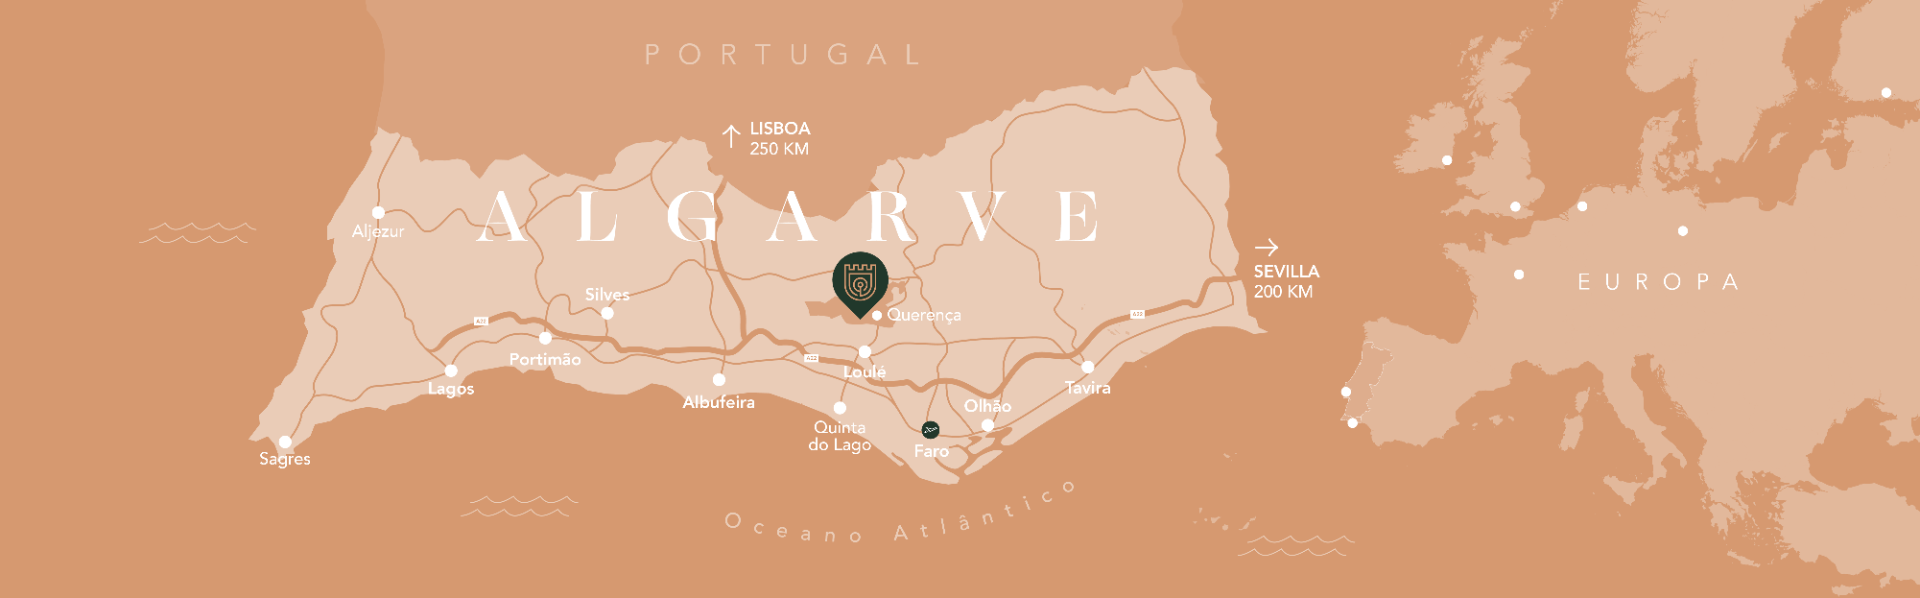 Mapa do Algarve que mostre a localização do Ombria Resort